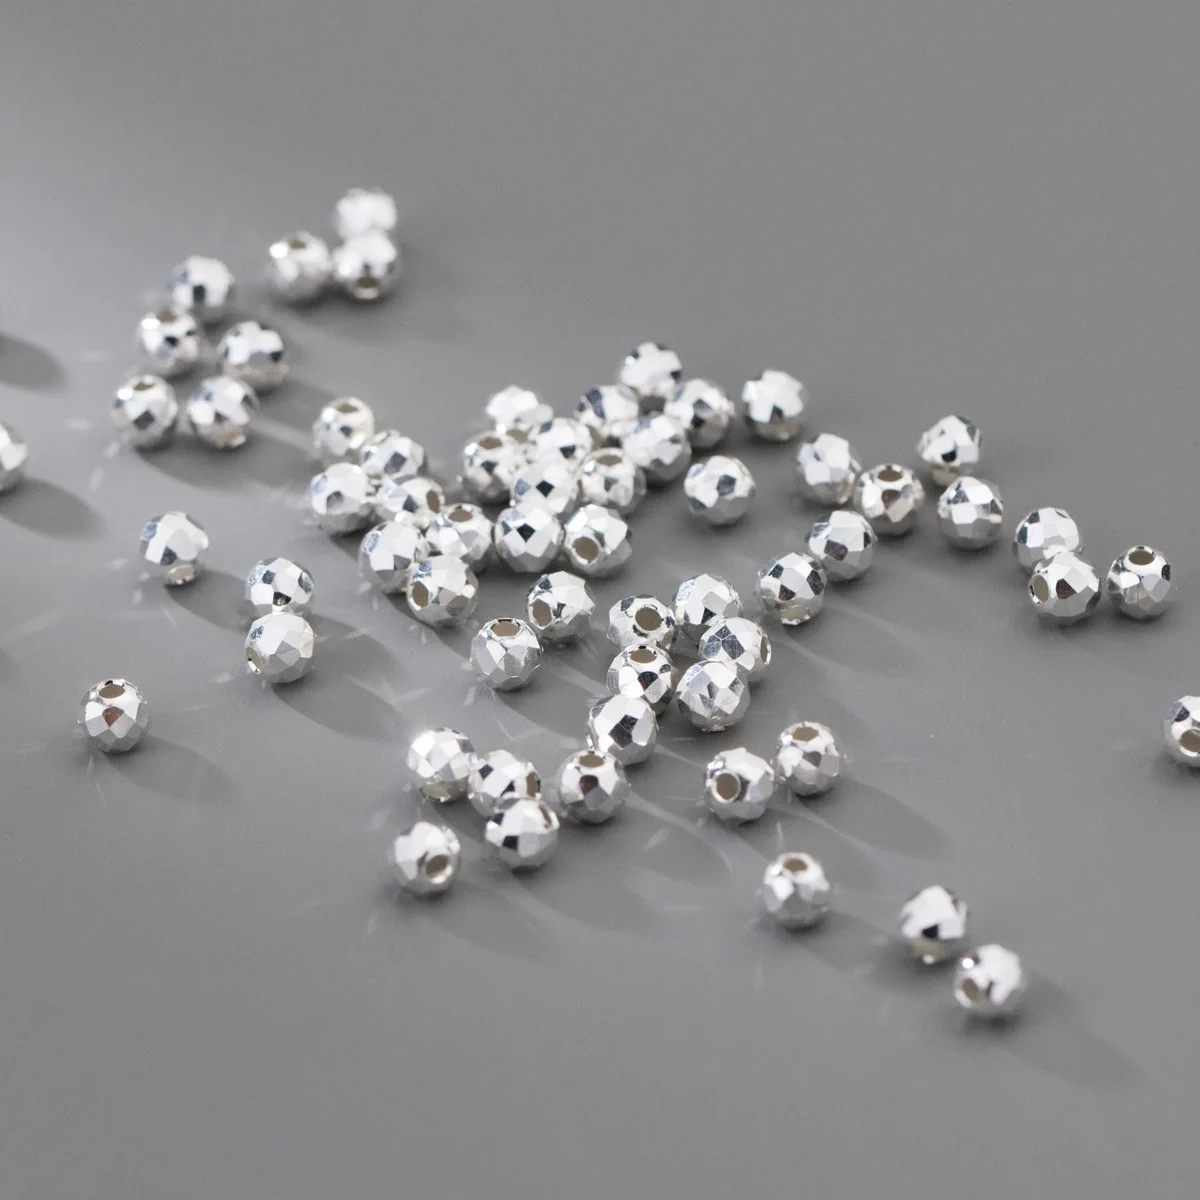 5 adet / grup 925 Ayar Gümüş Küçük Yönlü gevşek Boncuk 2.5 mm 3.5 mm 5mm El Yapımı Geometri Gümüş Boncuk Paspayı DIY Takı Yapımı